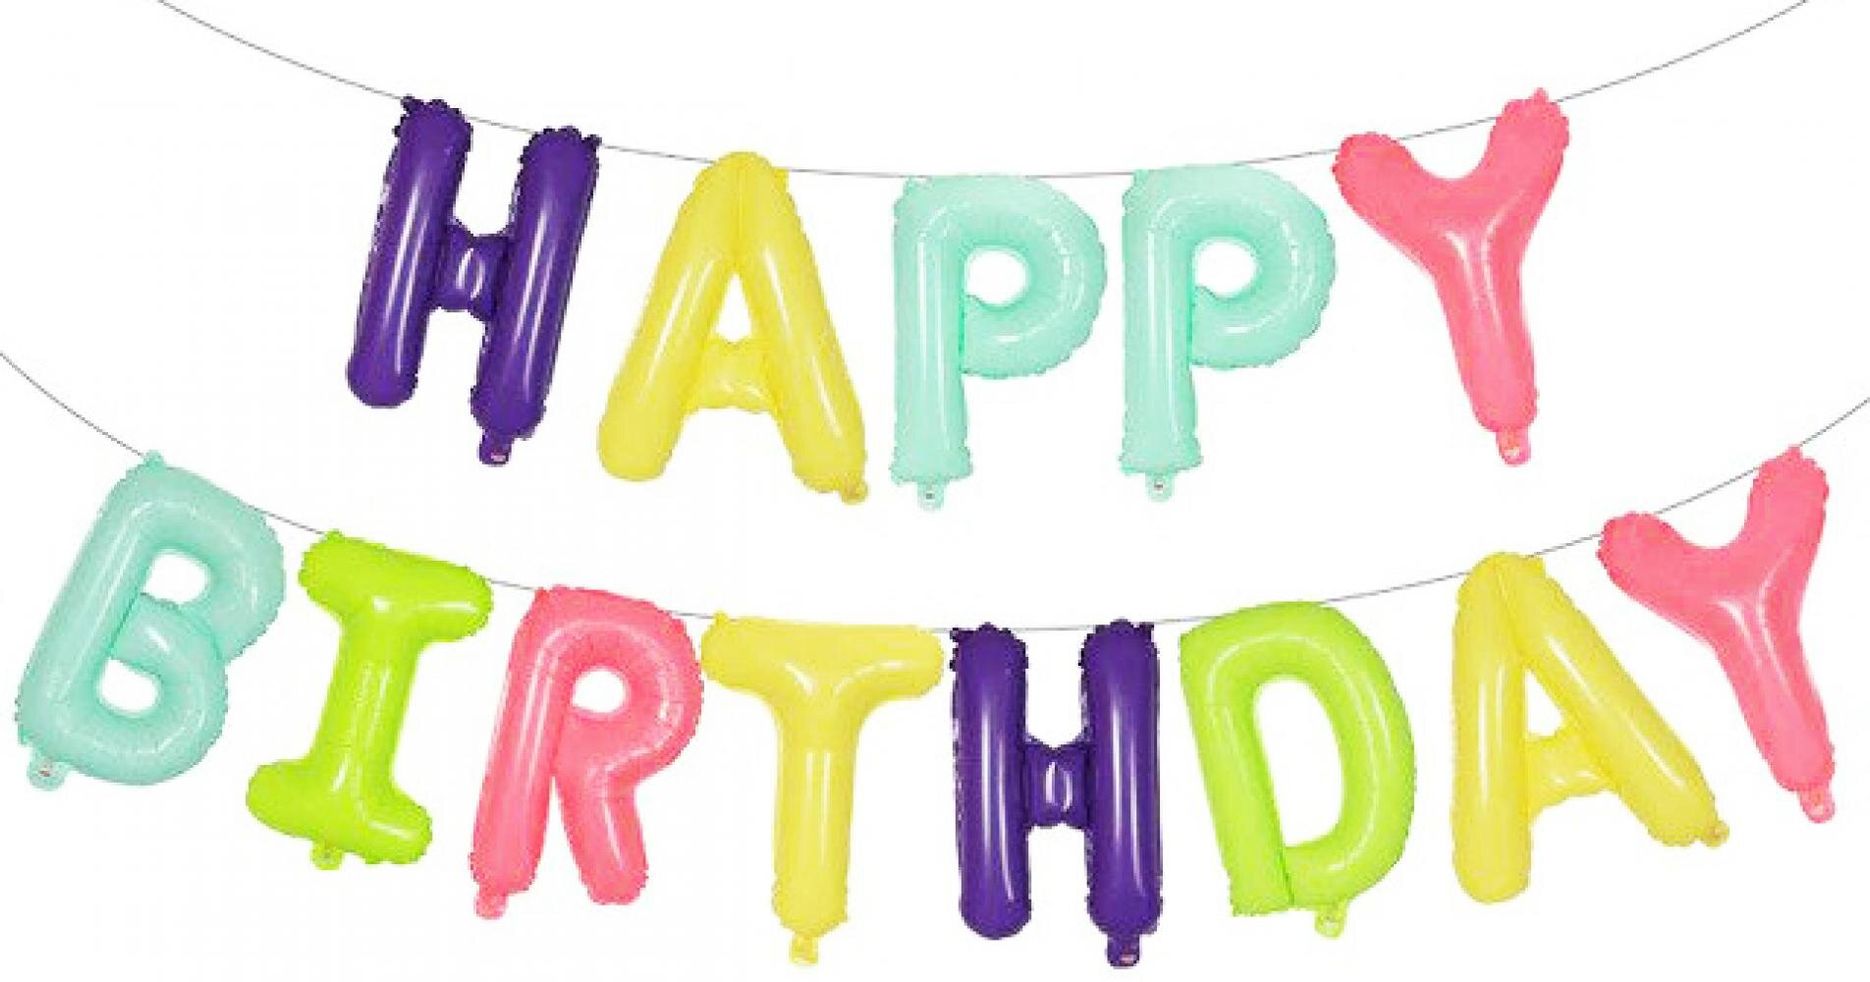 Фольгированные воздушные шары-буквы "HAPPY BIRTHDAY", разноцветные, высота 36 см